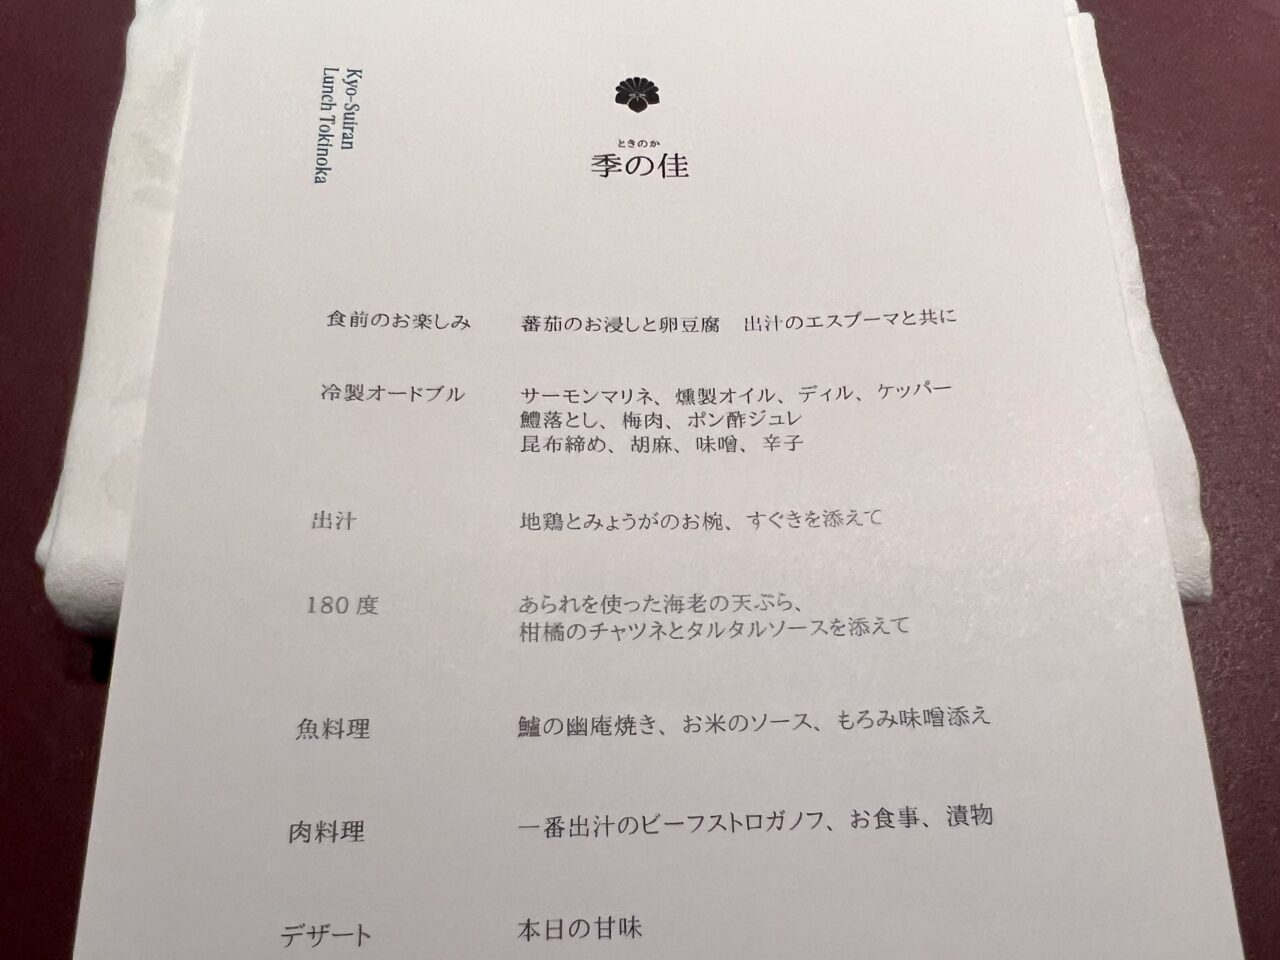 翠嵐ラグジュアリーコレクションホテル京都「京翠嵐」の季の佳(8,855円)コースメニューです。